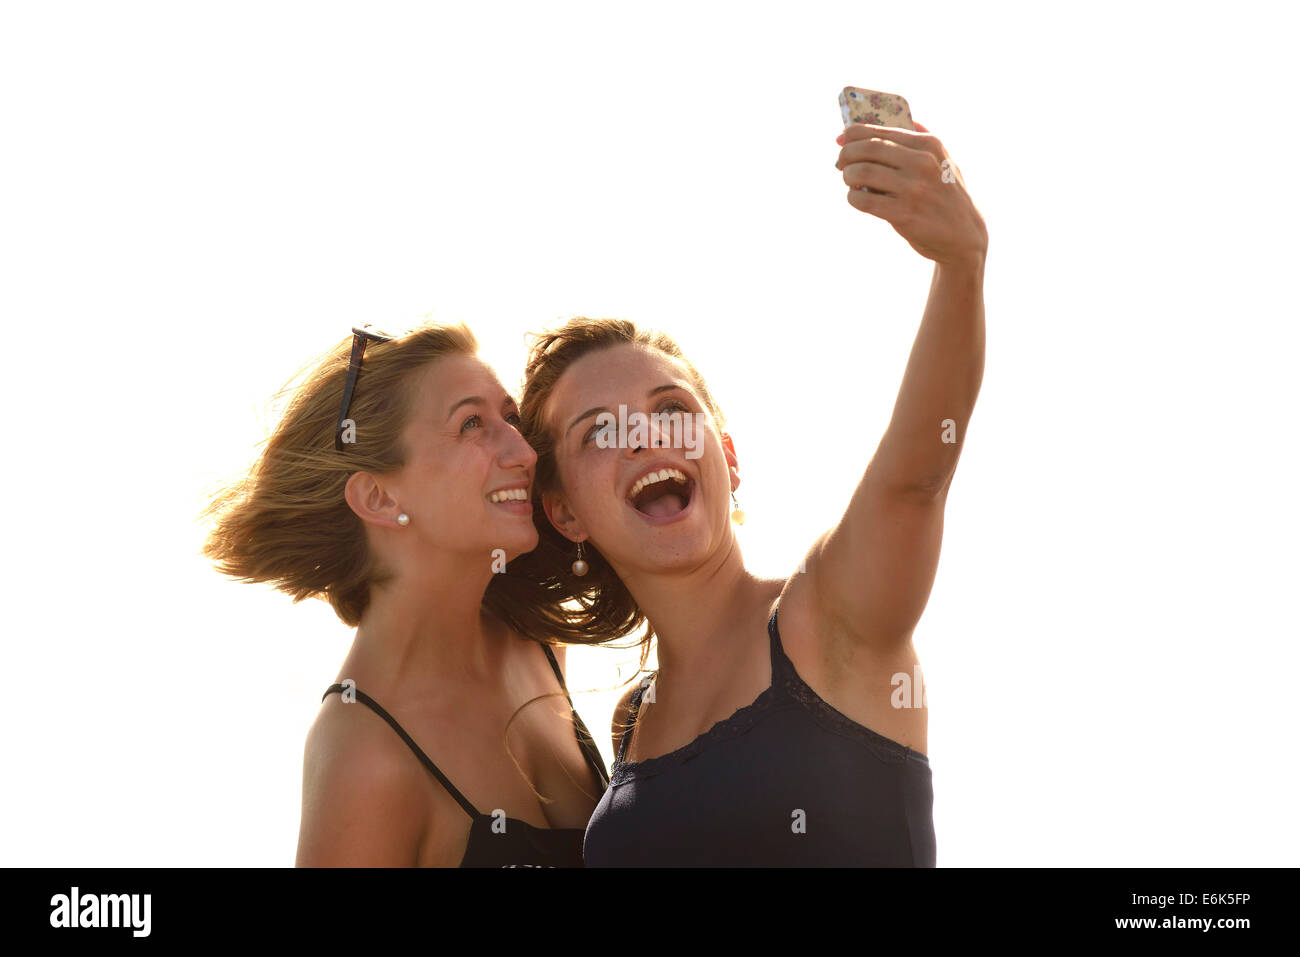 Selfie, due giovani donne che prendono un autoritratto con un telefono cellulare, Lanzarote, Isole Canarie, Spagna Foto Stock